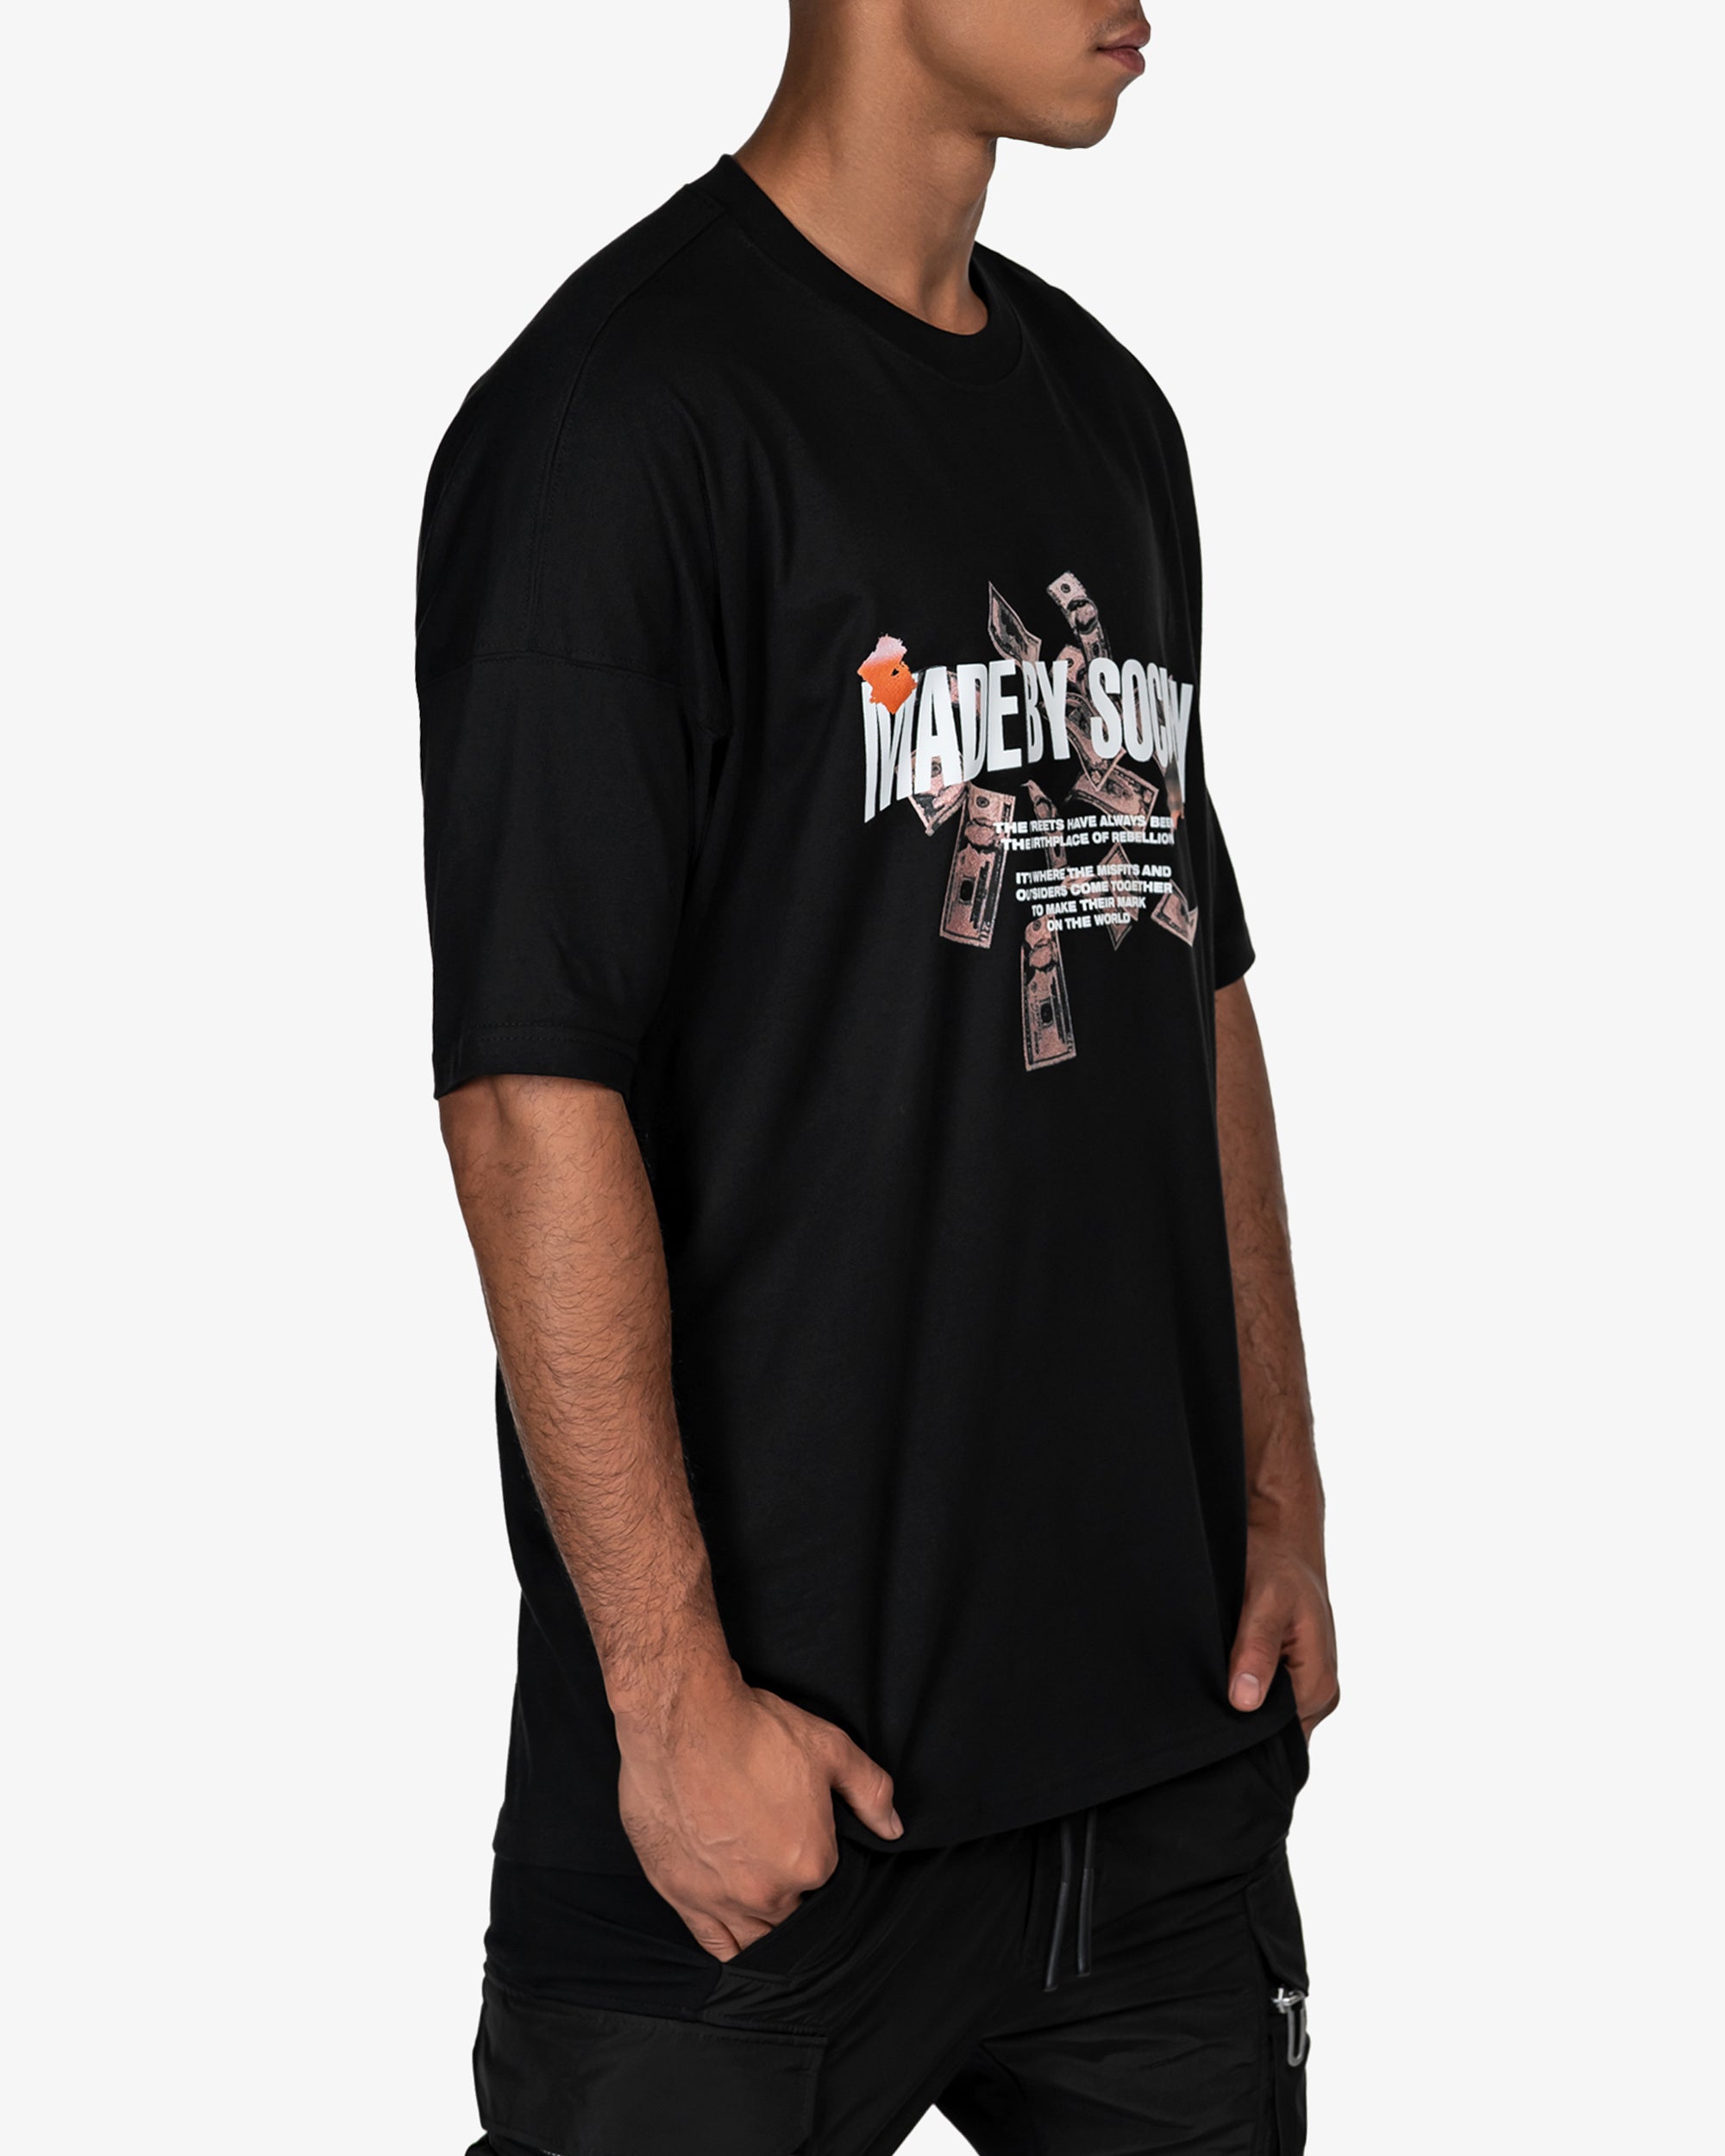 Gangster t-shirt - T14748